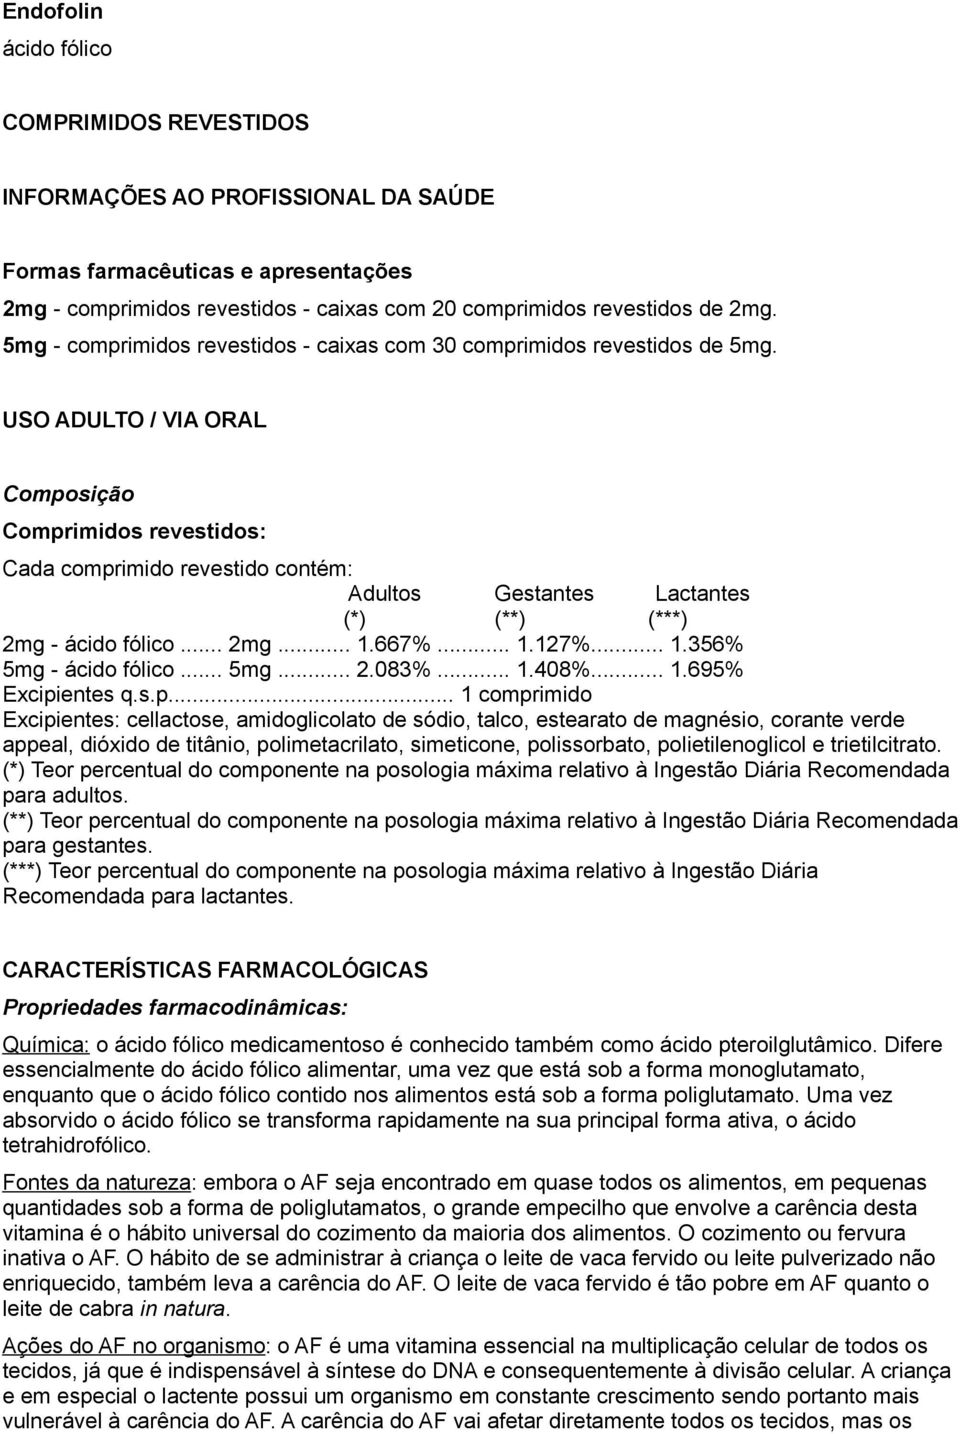 USO ADULTO / VIA ORAL Composição Comprimidos revestidos: Cada comprimido revestido contém: Adultos Gestantes Lactantes (*) (**) (***) 2mg - ácido fólico... 2mg... 1.667%... 1.127%... 1.356% 5mg - ácido fólico.